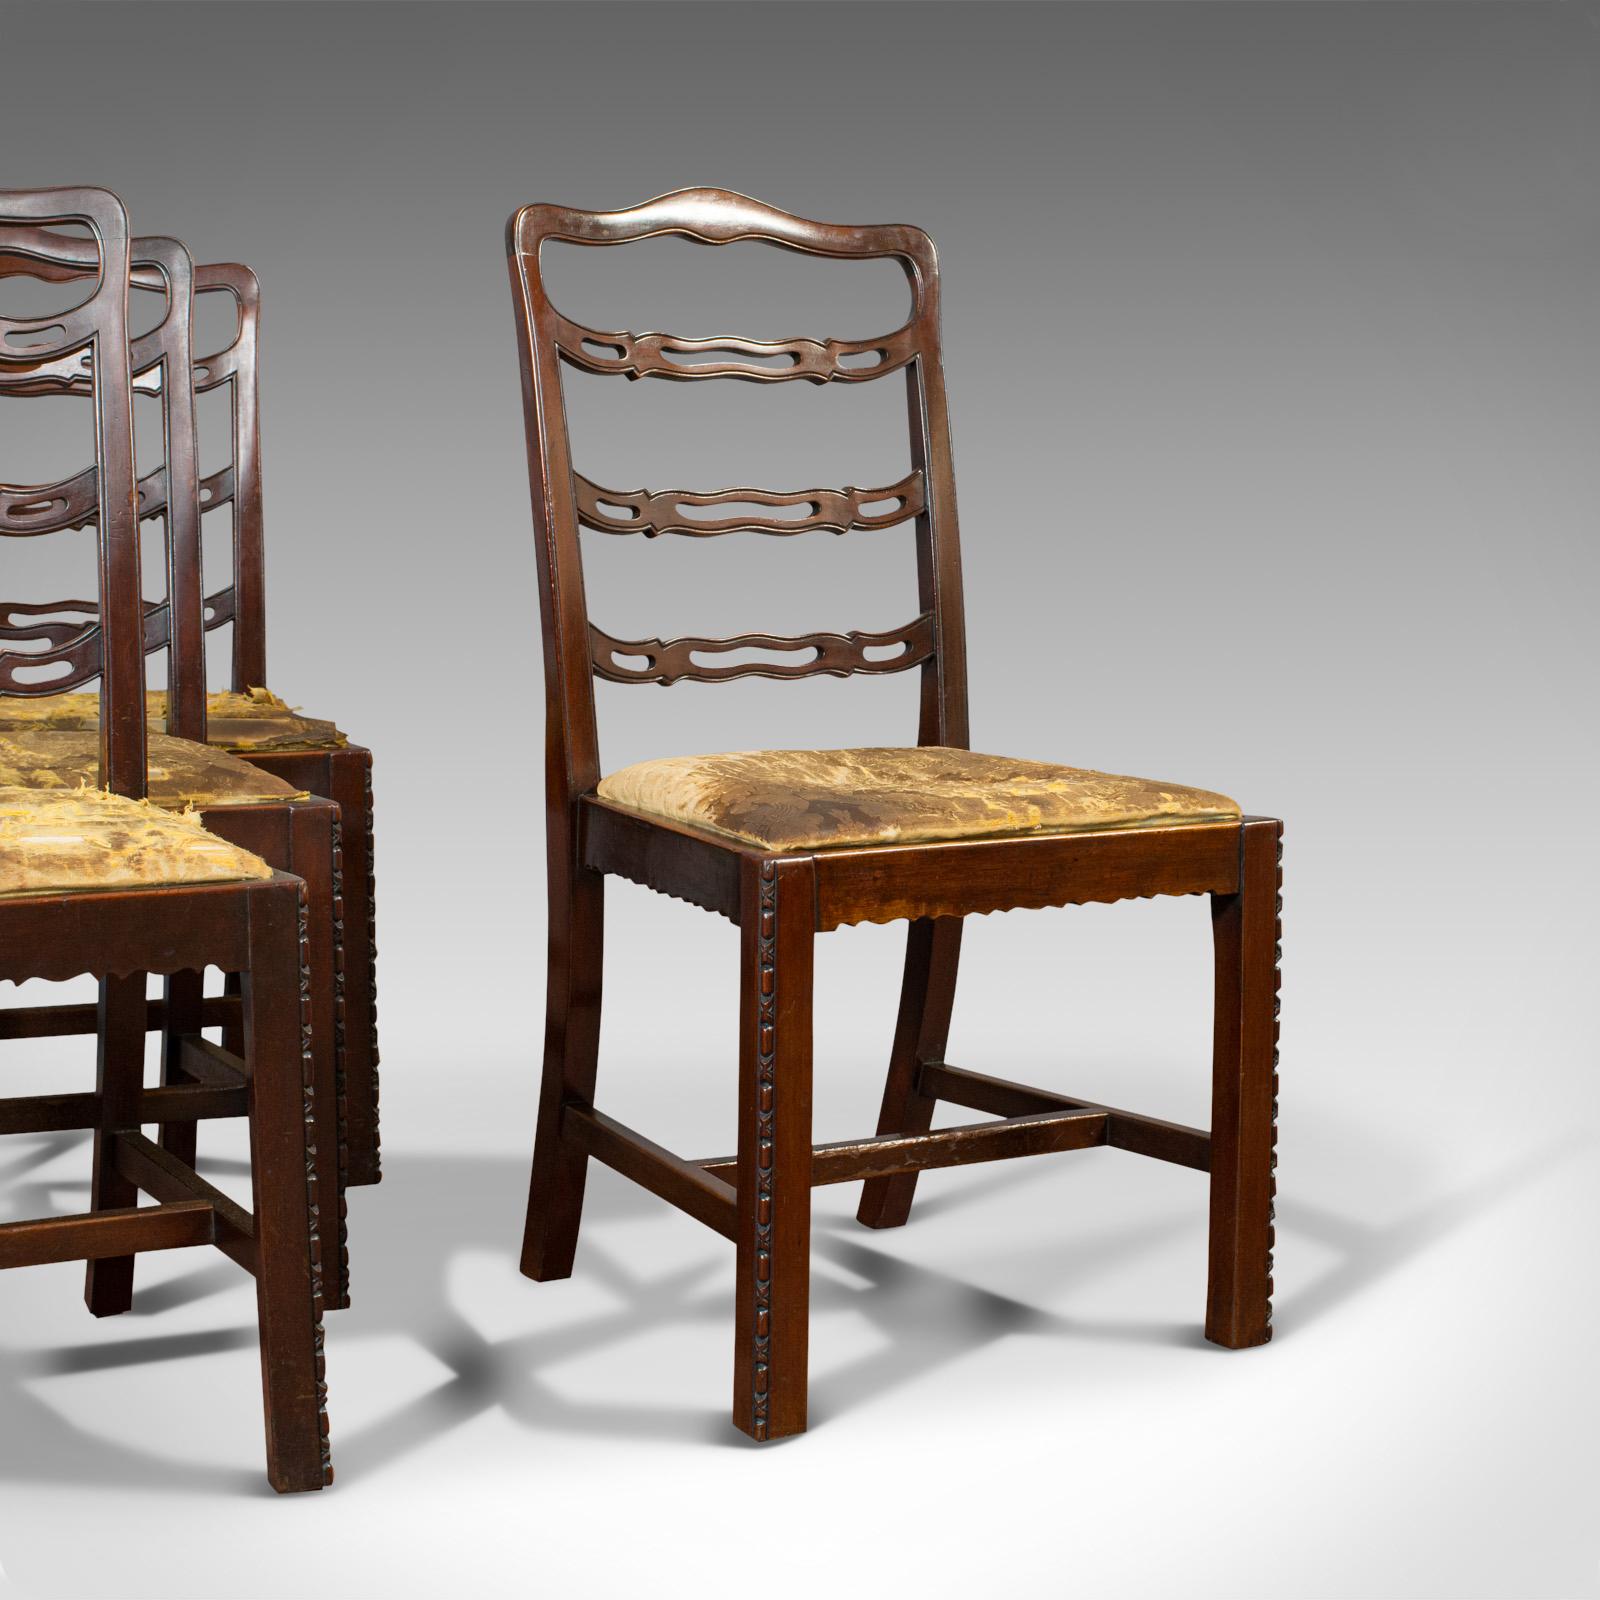 Dies ist ein Satz von 4 antiken Stühlen mit Leiterrücken. Ein irischer Esszimmerstuhl aus Mahagoni, aus der späten viktorianischen Zeit, um 1880.

Wunderschöne Rahmen, ideal für die Neupolsterung
Mit wünschenswerter Alterspatina
Mahagoni mit